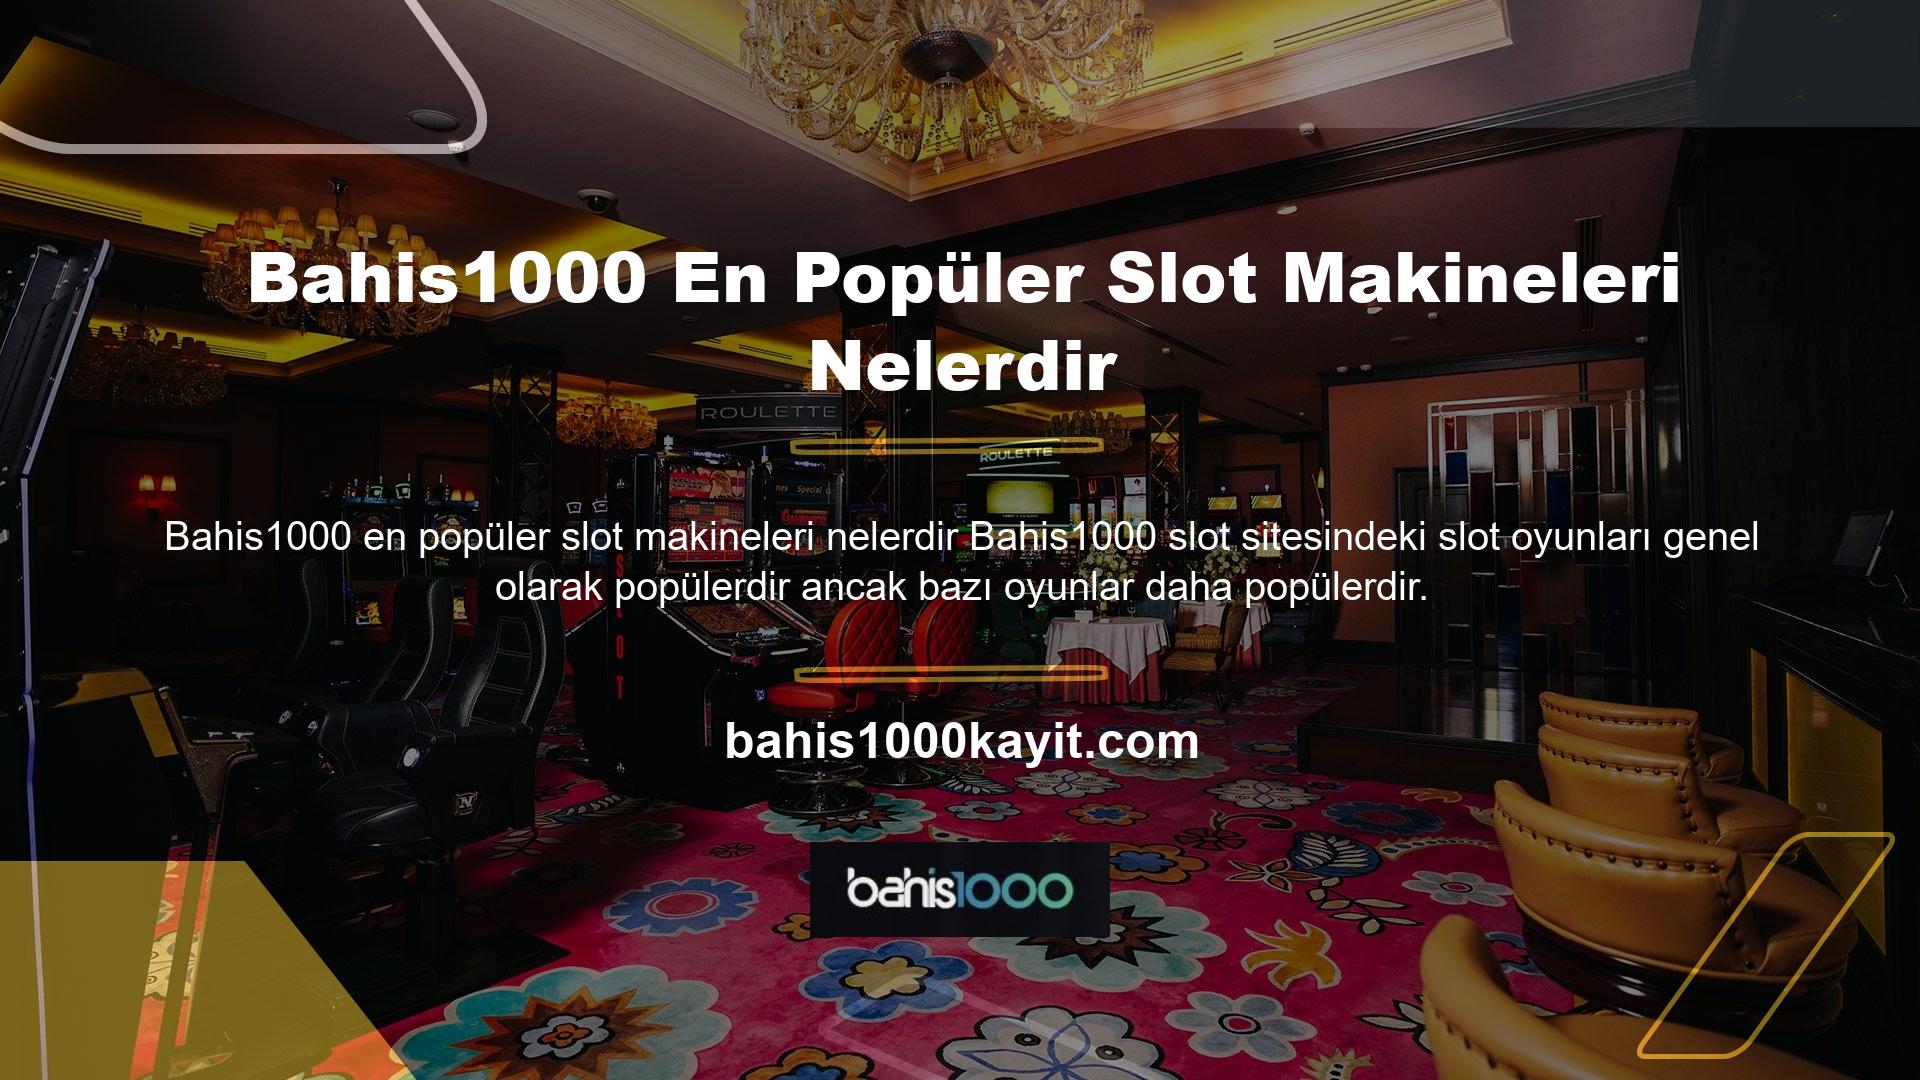 Bahis1000 web sitesindeki popüler slot makineleri